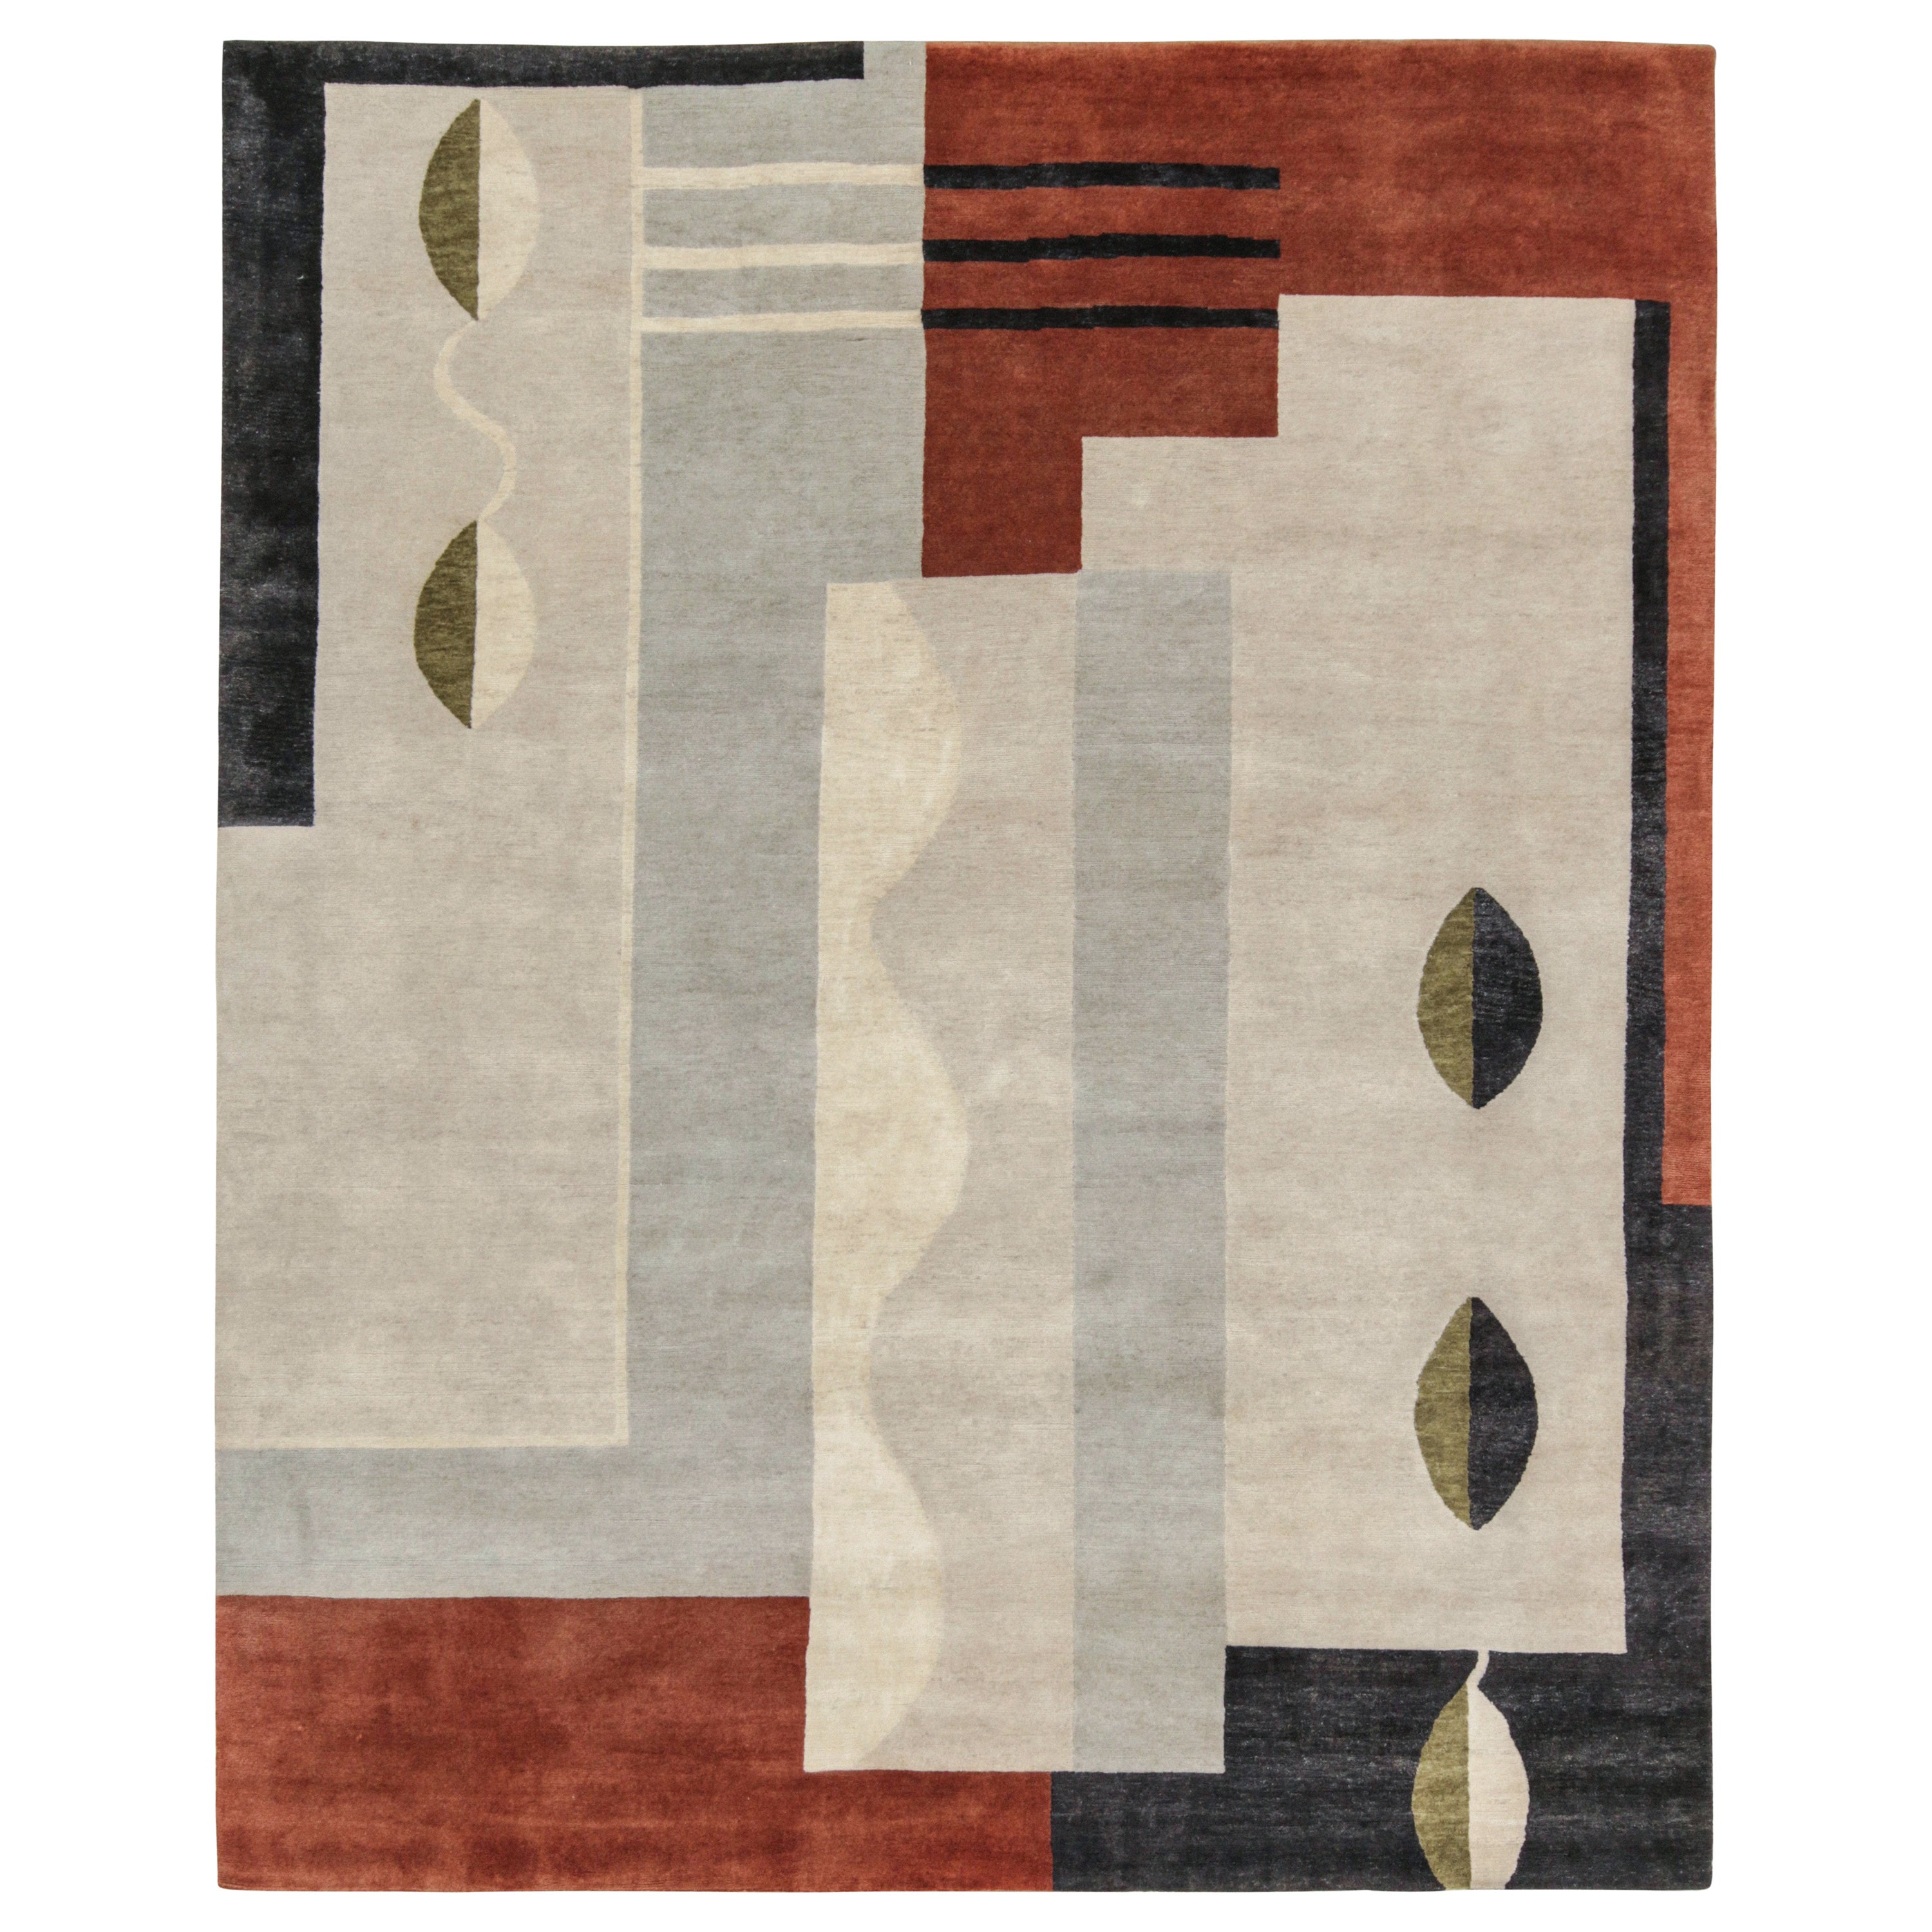 Rug & Kilim's French Art Deco Style Rug in Gray, Brown & Black Geometric Pattern (tapis de style Art déco français à motifs géométriques gris, bruns et noirs)